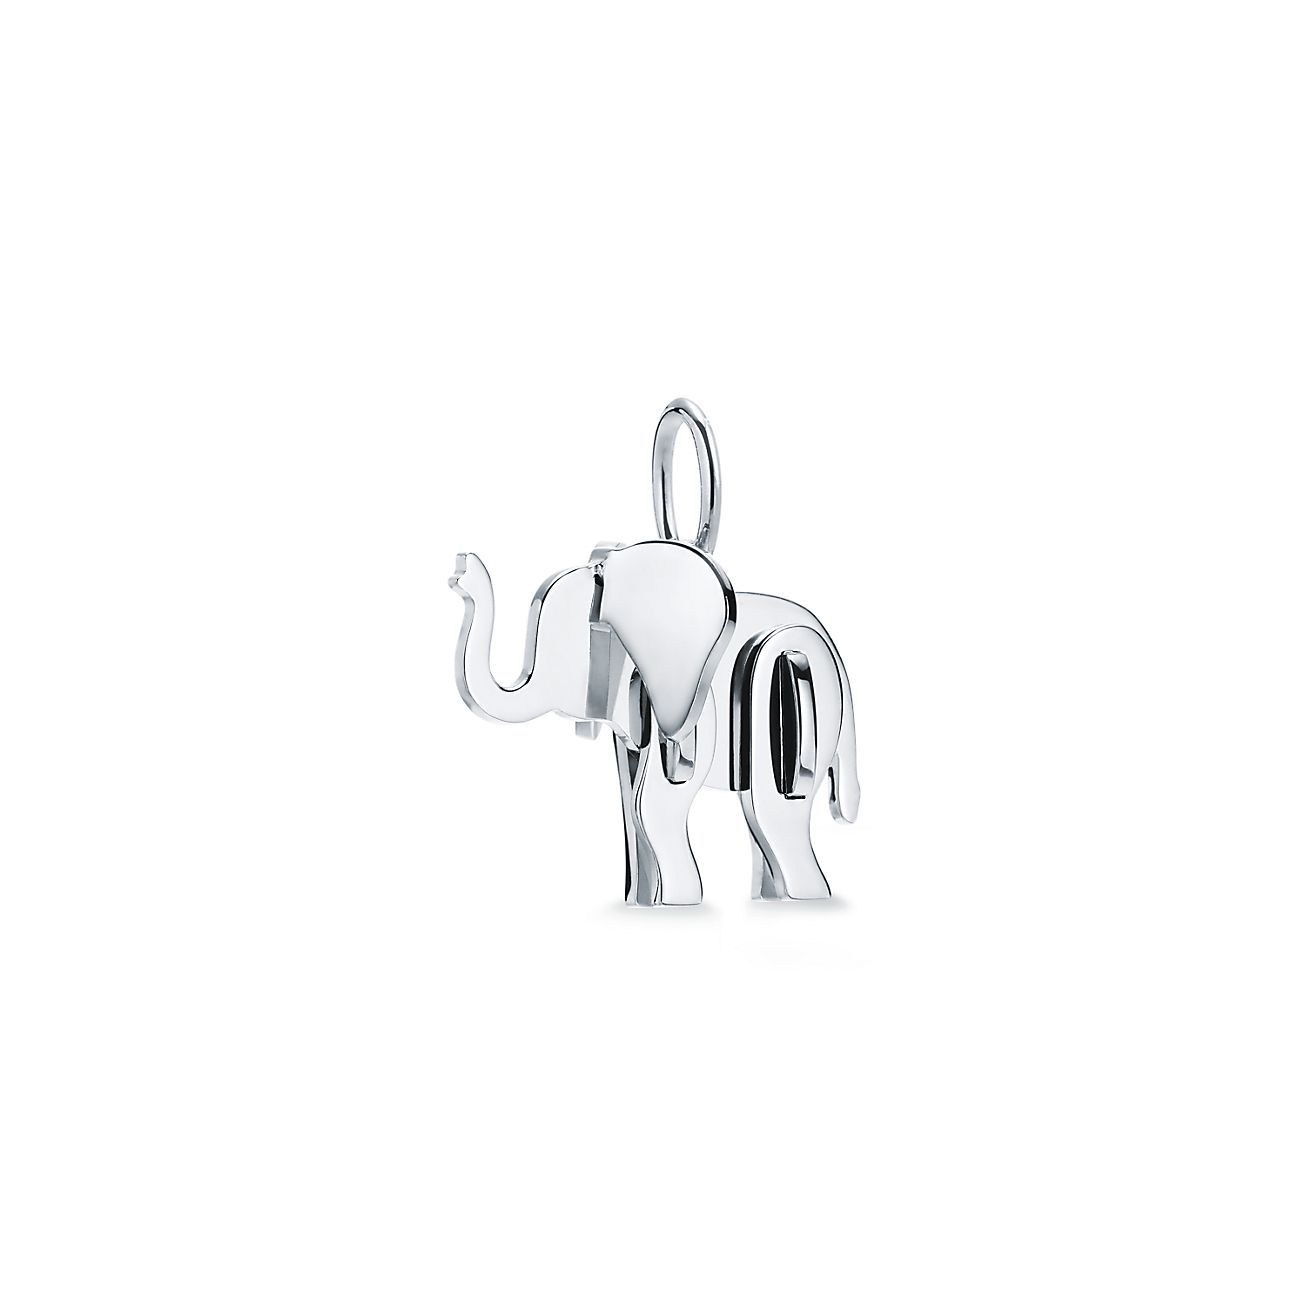 tiffany elephant necklace uk